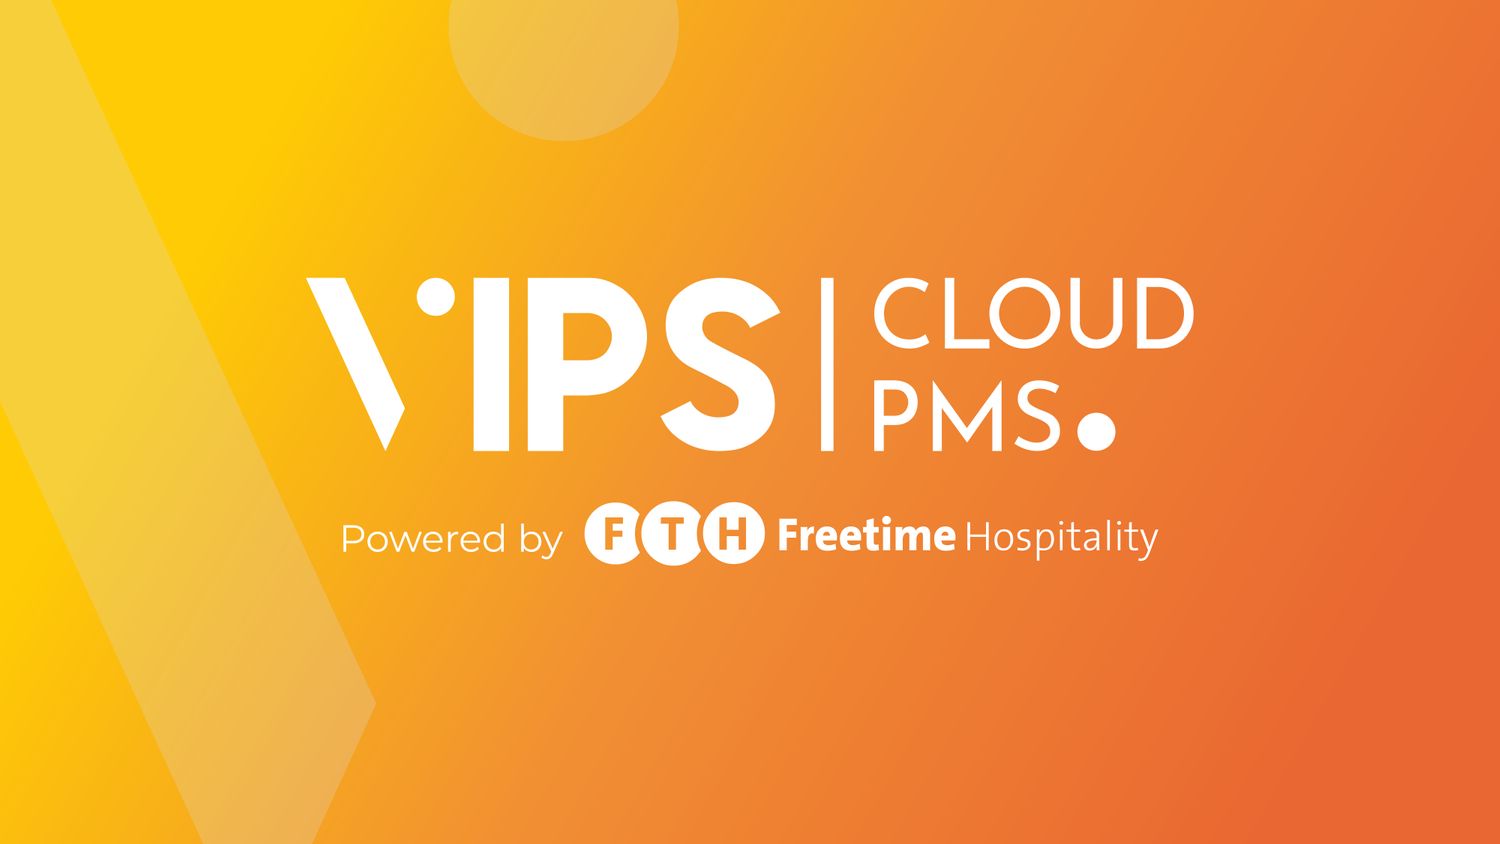 VIPS Cloud PMS